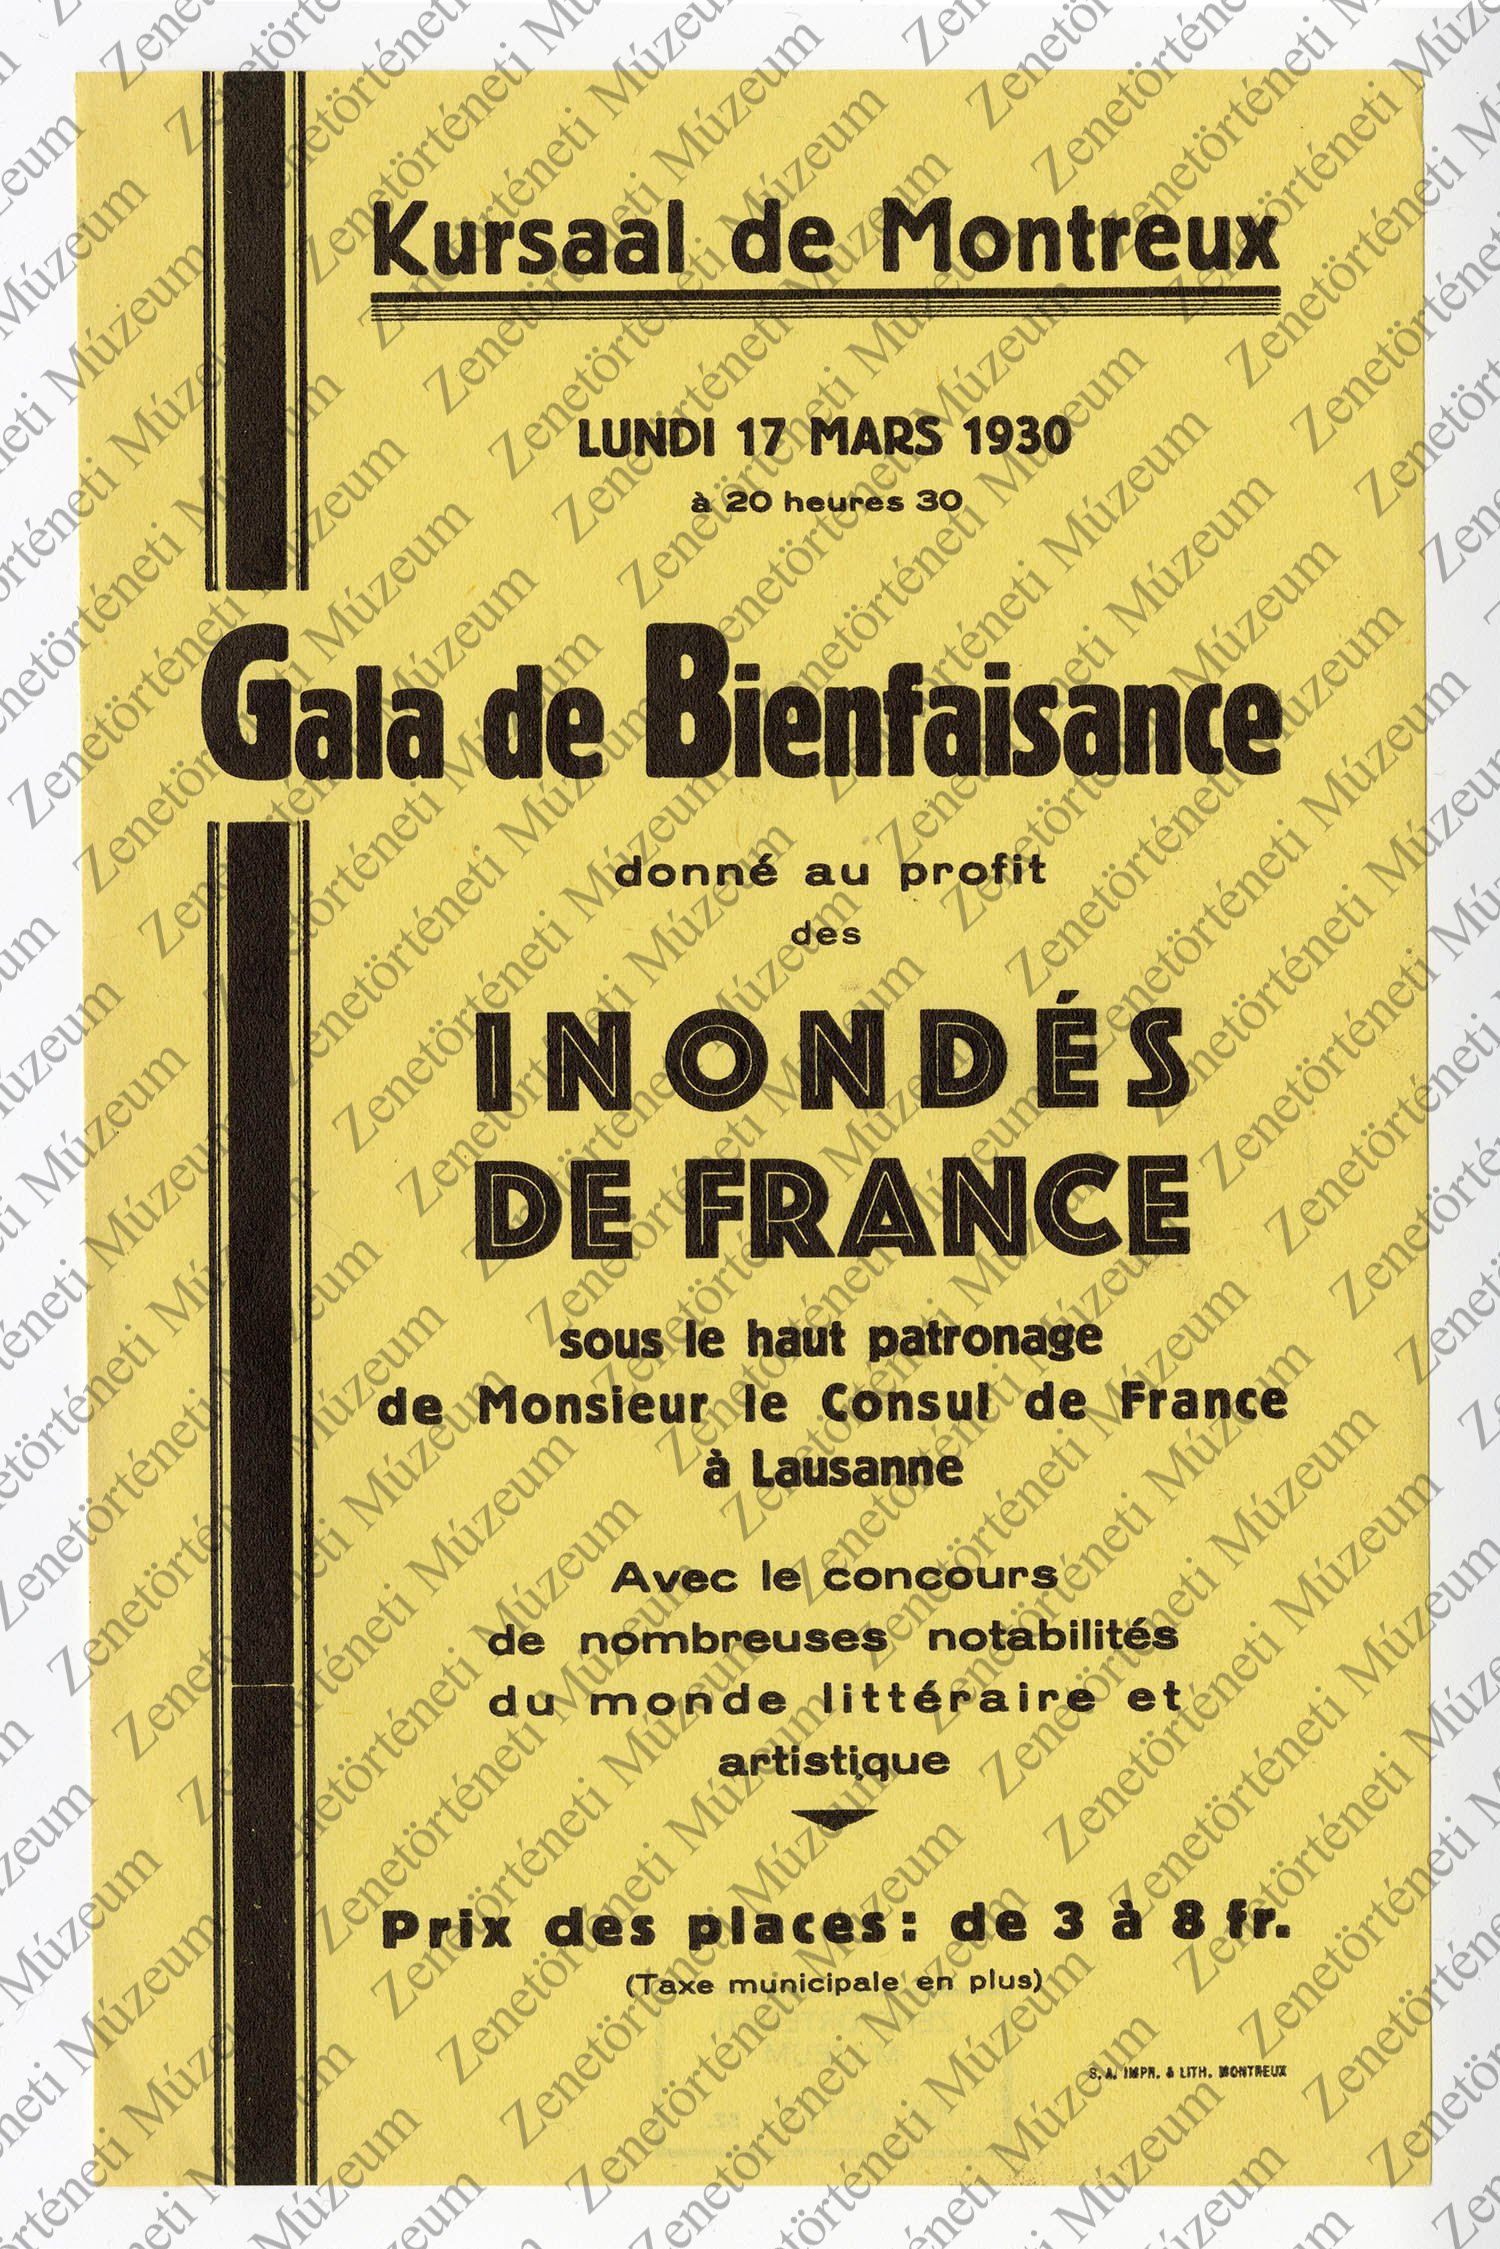 A Kursaal de Montreux 1930. márc. 17-i műsorának kis plakátja (Zenetörténeti Múzeum CC BY-NC-SA)